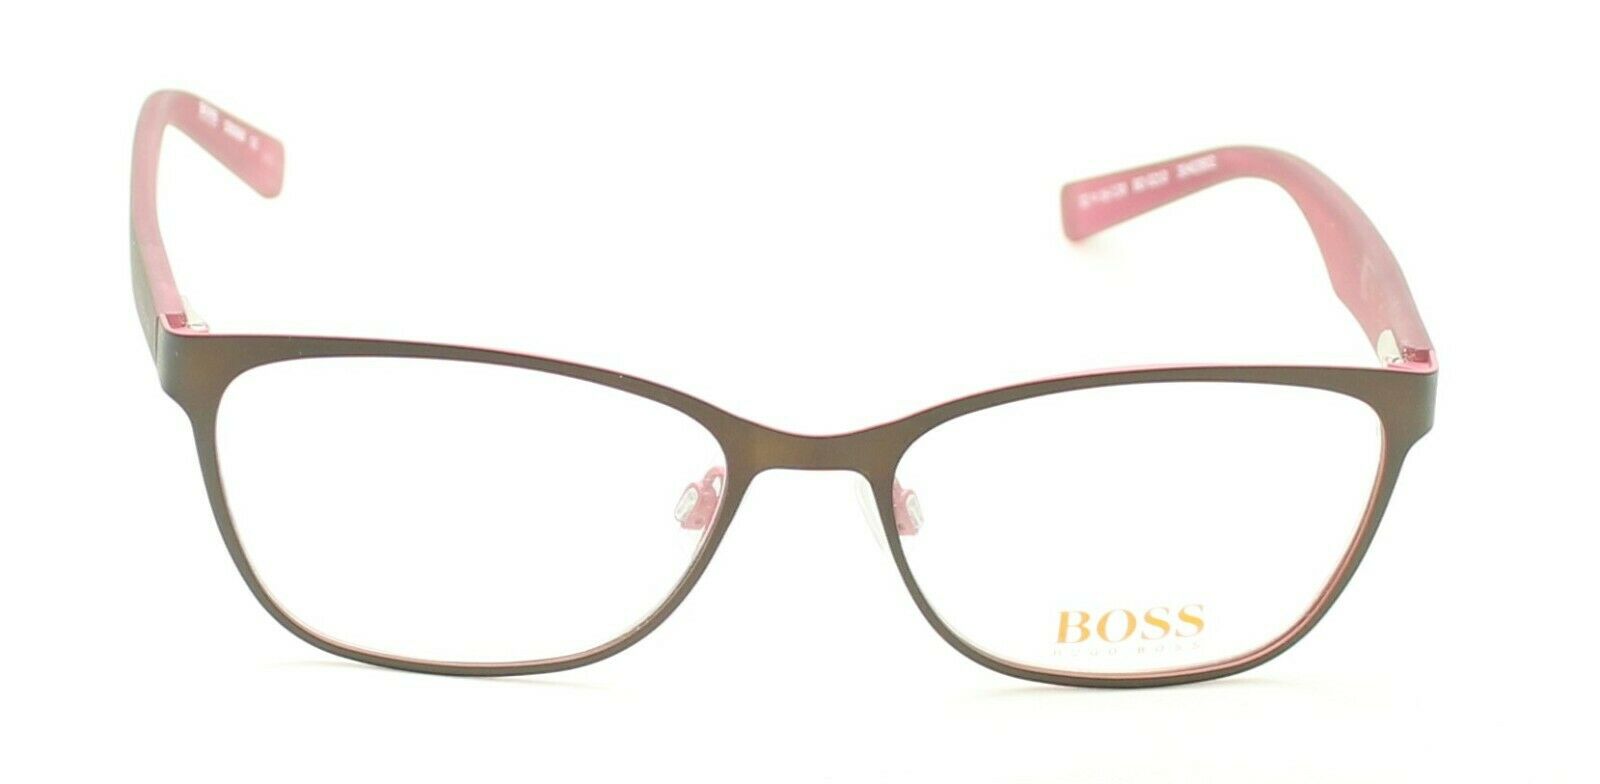 BOSS ORANGE BO 0210 52mm Eyewear FRAMES RX Optical Glasses Eyeglasses - New